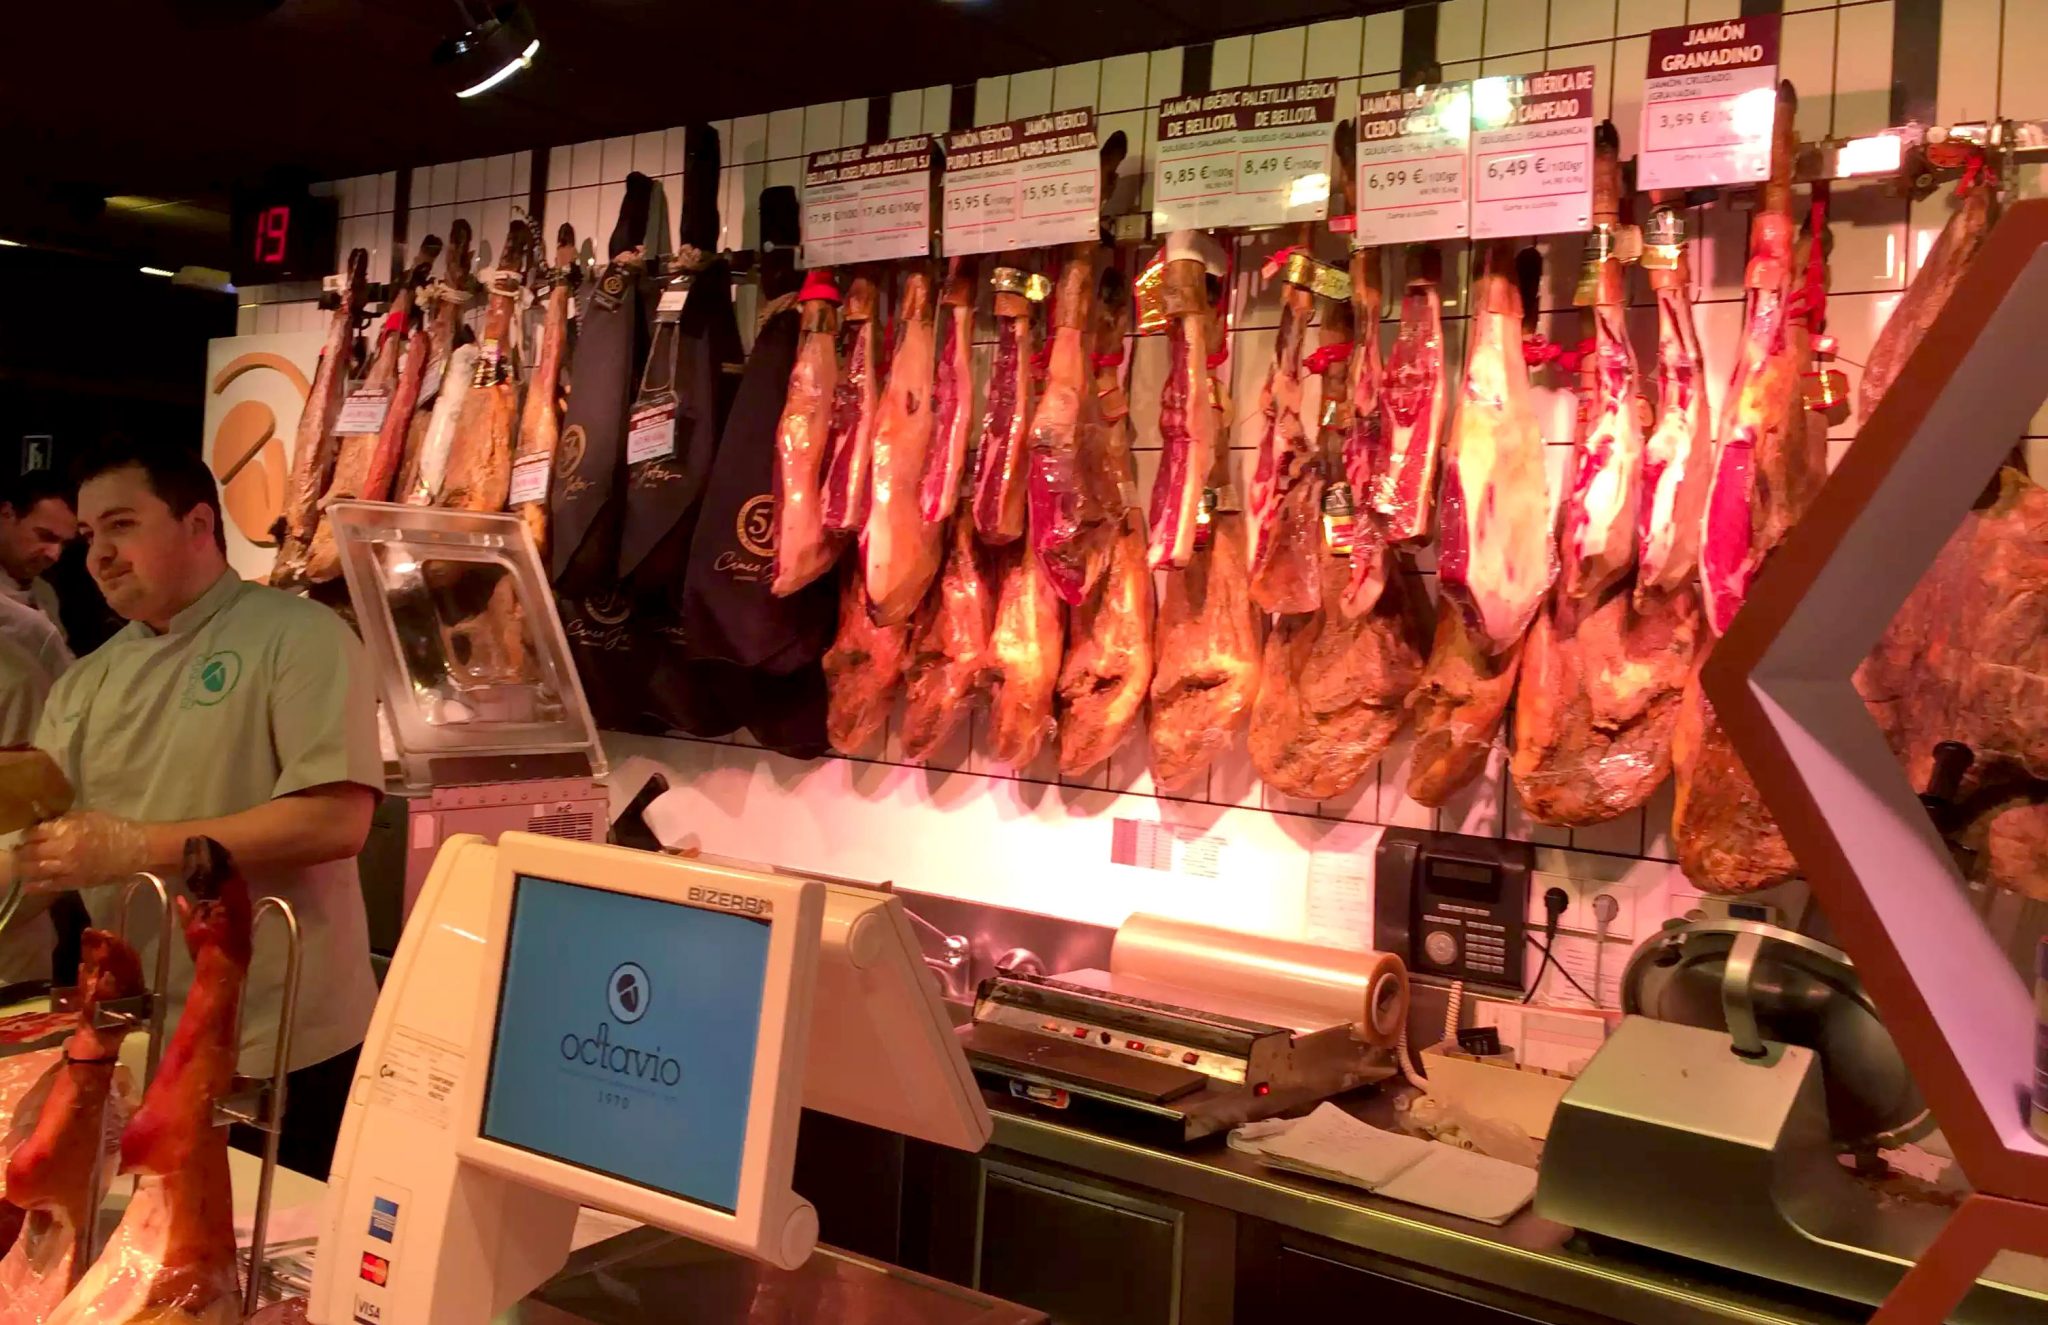 Best Food Markets In Madrid by Emma Eats & Explores - Mercado San Miguel